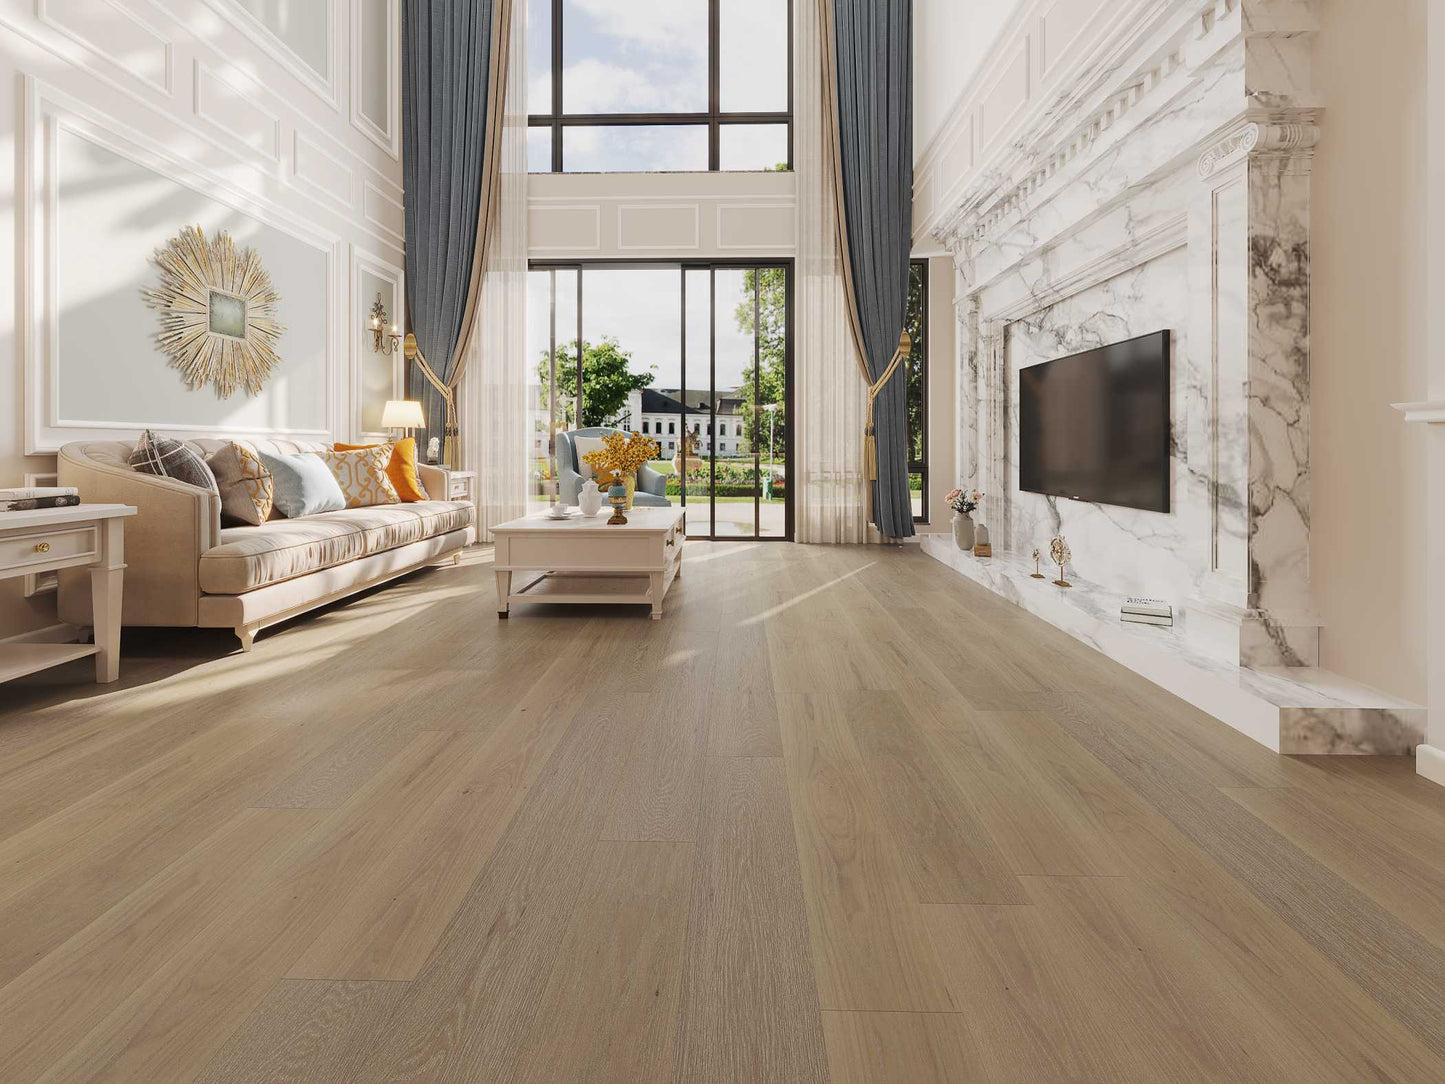 Driftwood flooring in living room setting